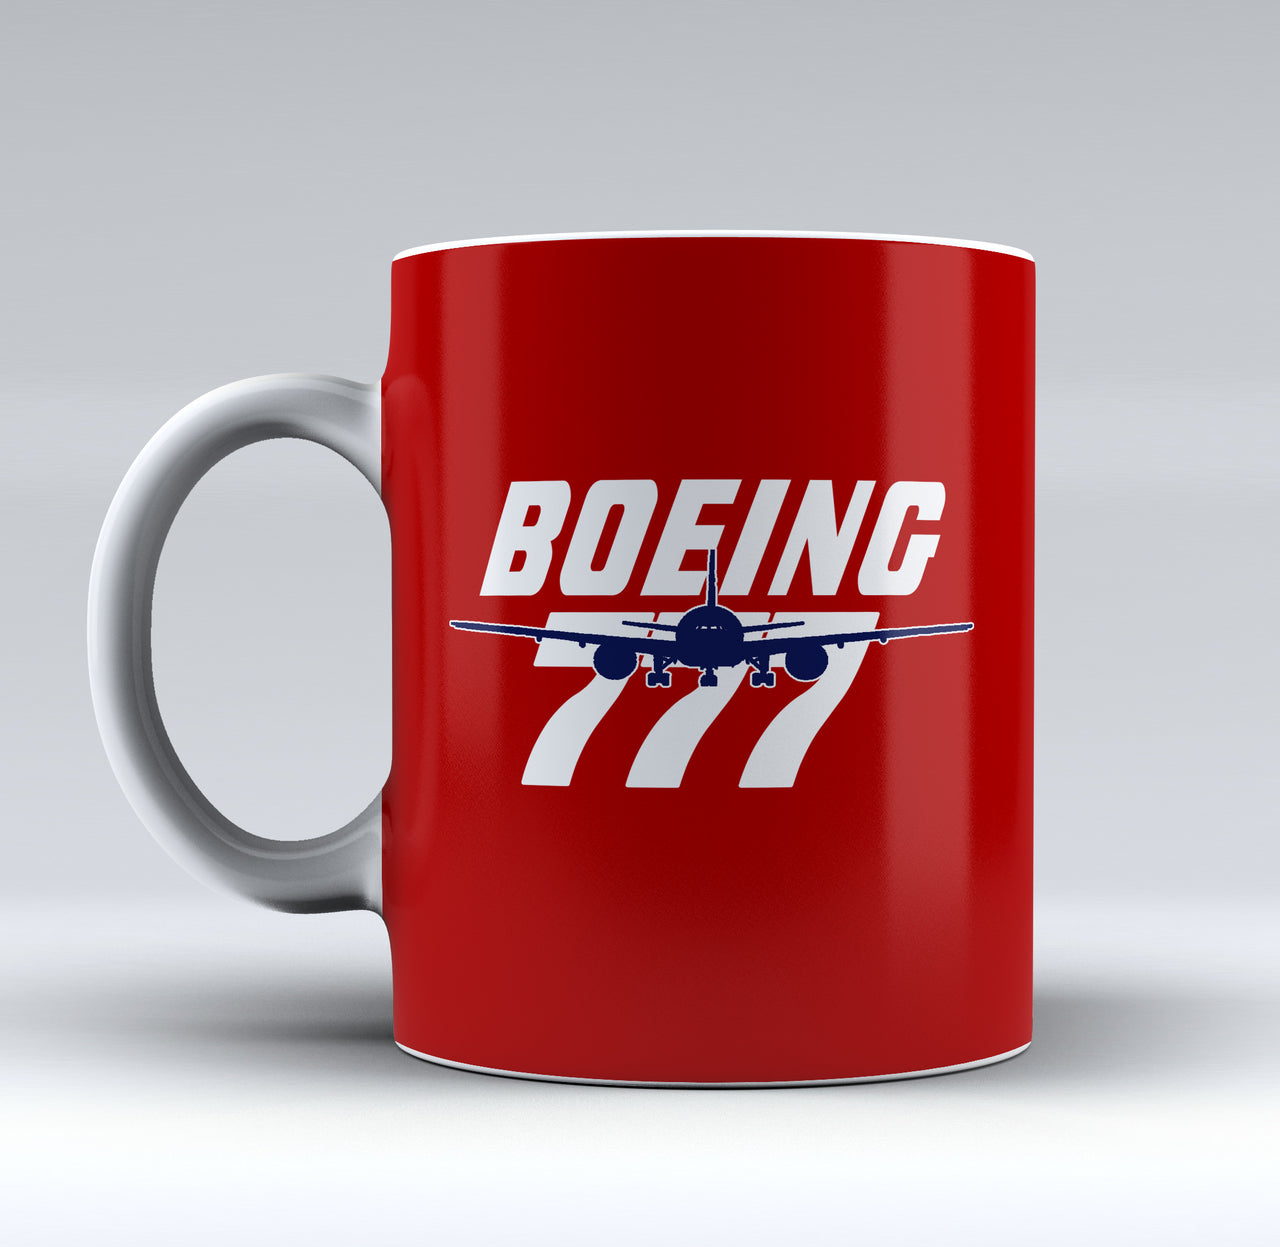 Amazing Boeing 777 Designed Mugs